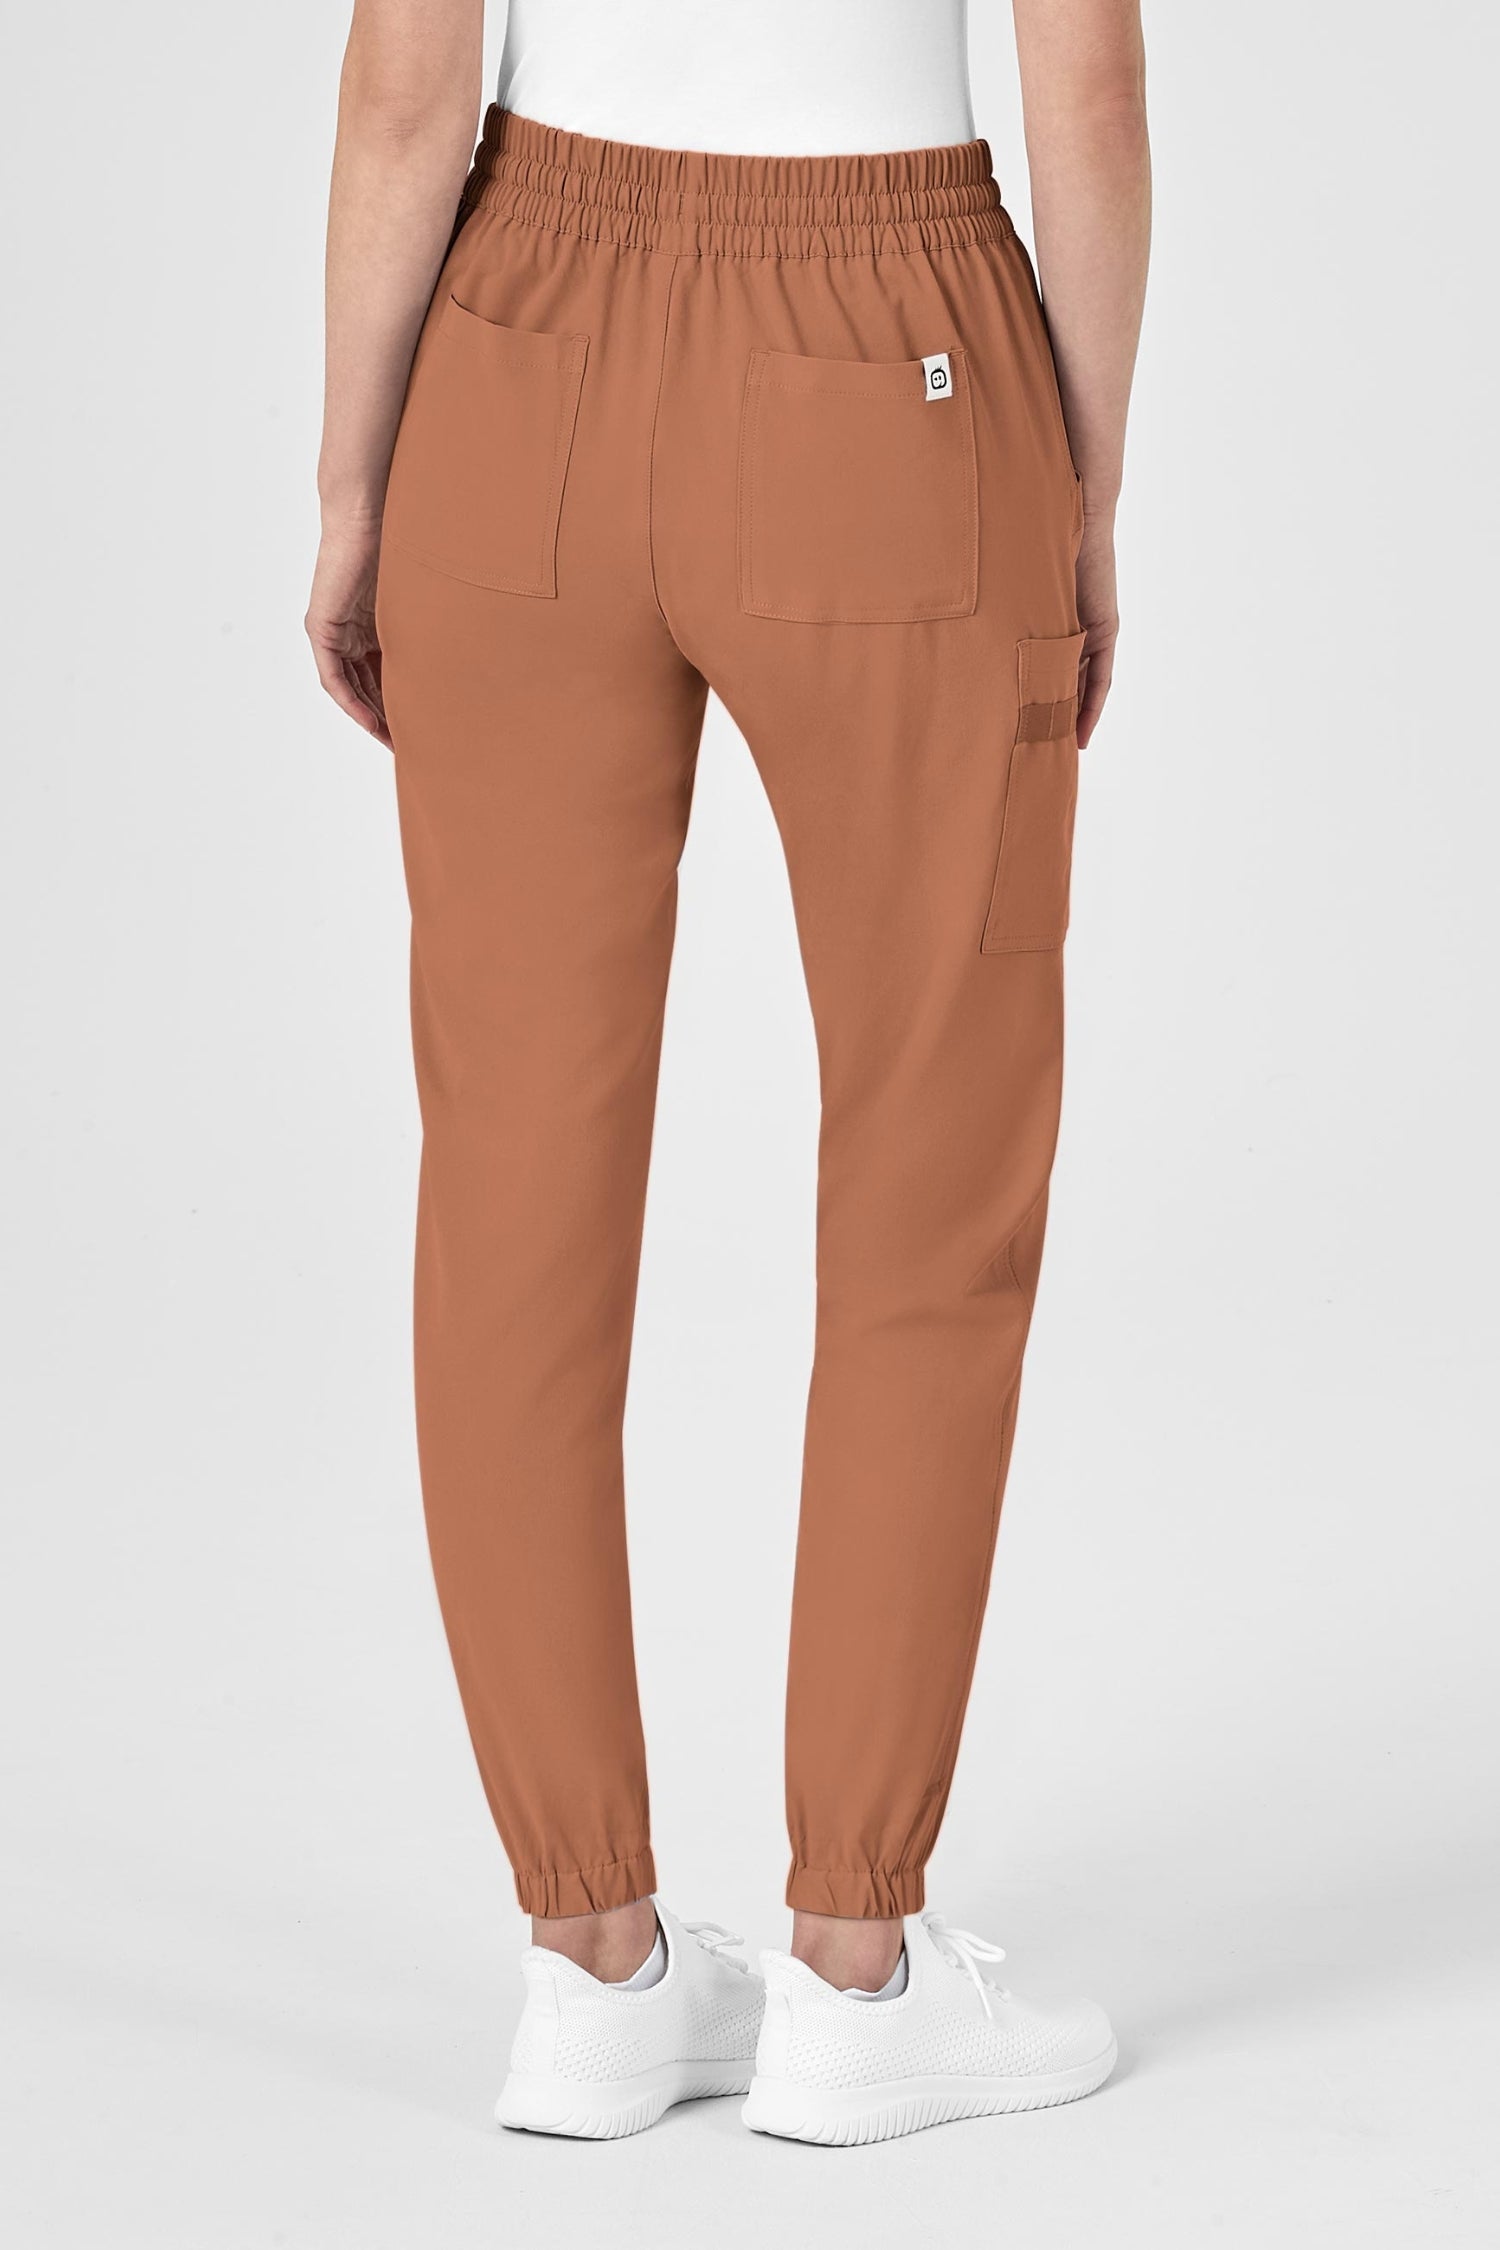 Le North Face Women’s Cargo Pant en polyester spandex, tenue médicale marron avec poches à fermeture